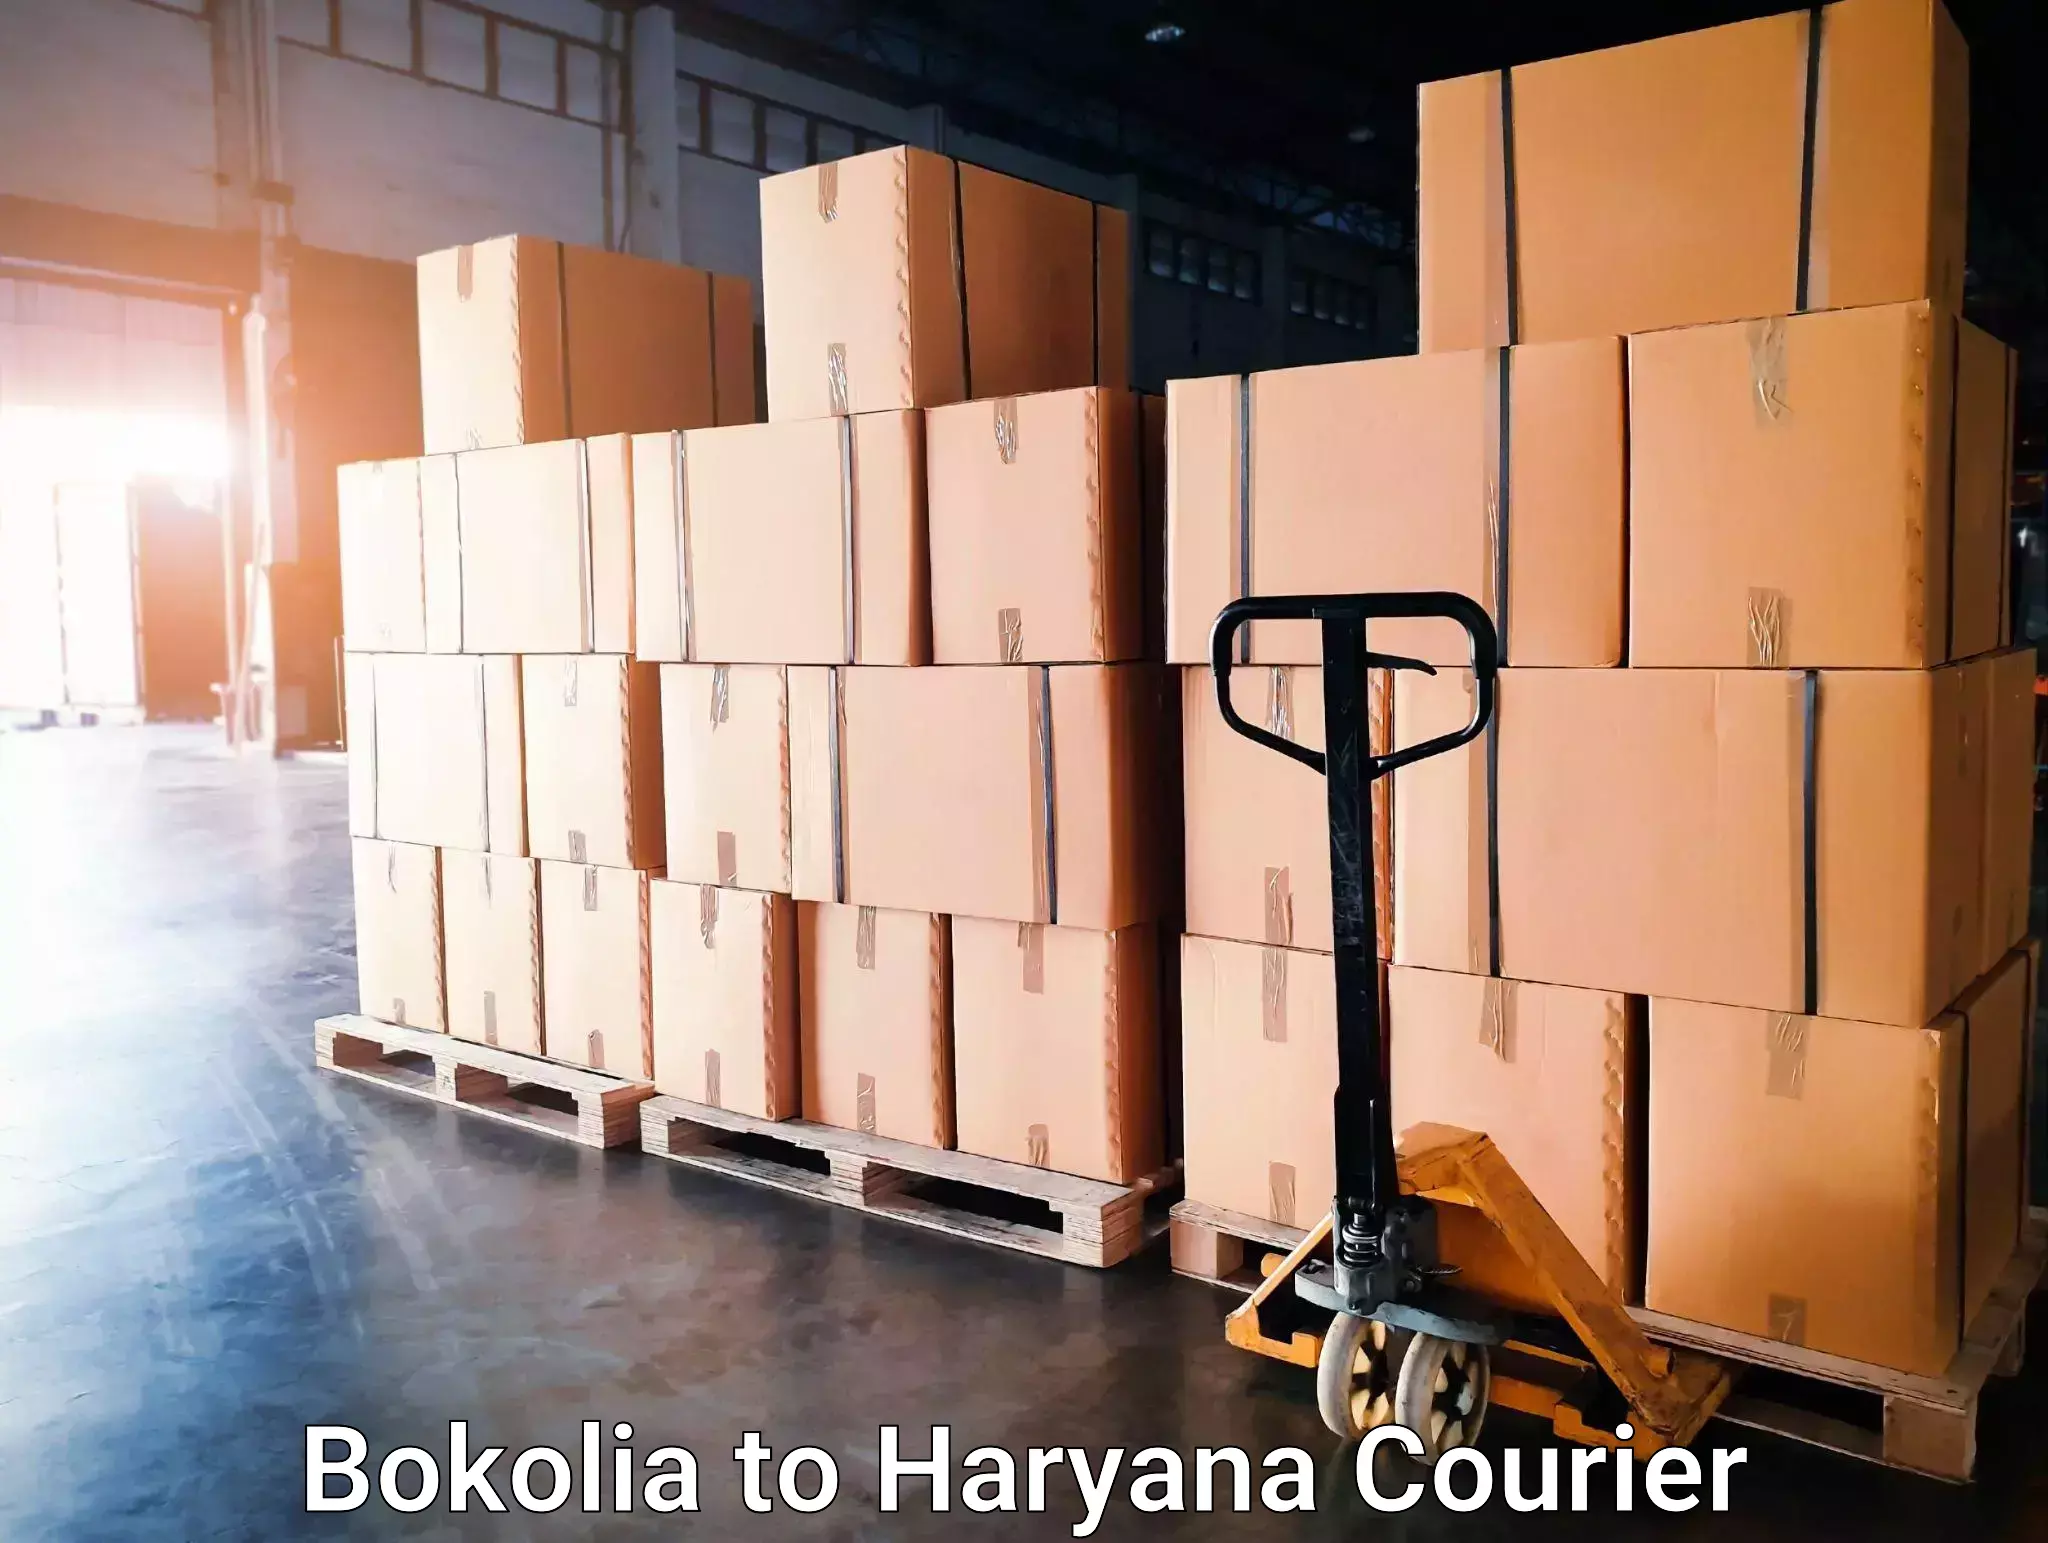 Express delivery capabilities Bokolia to Haryana